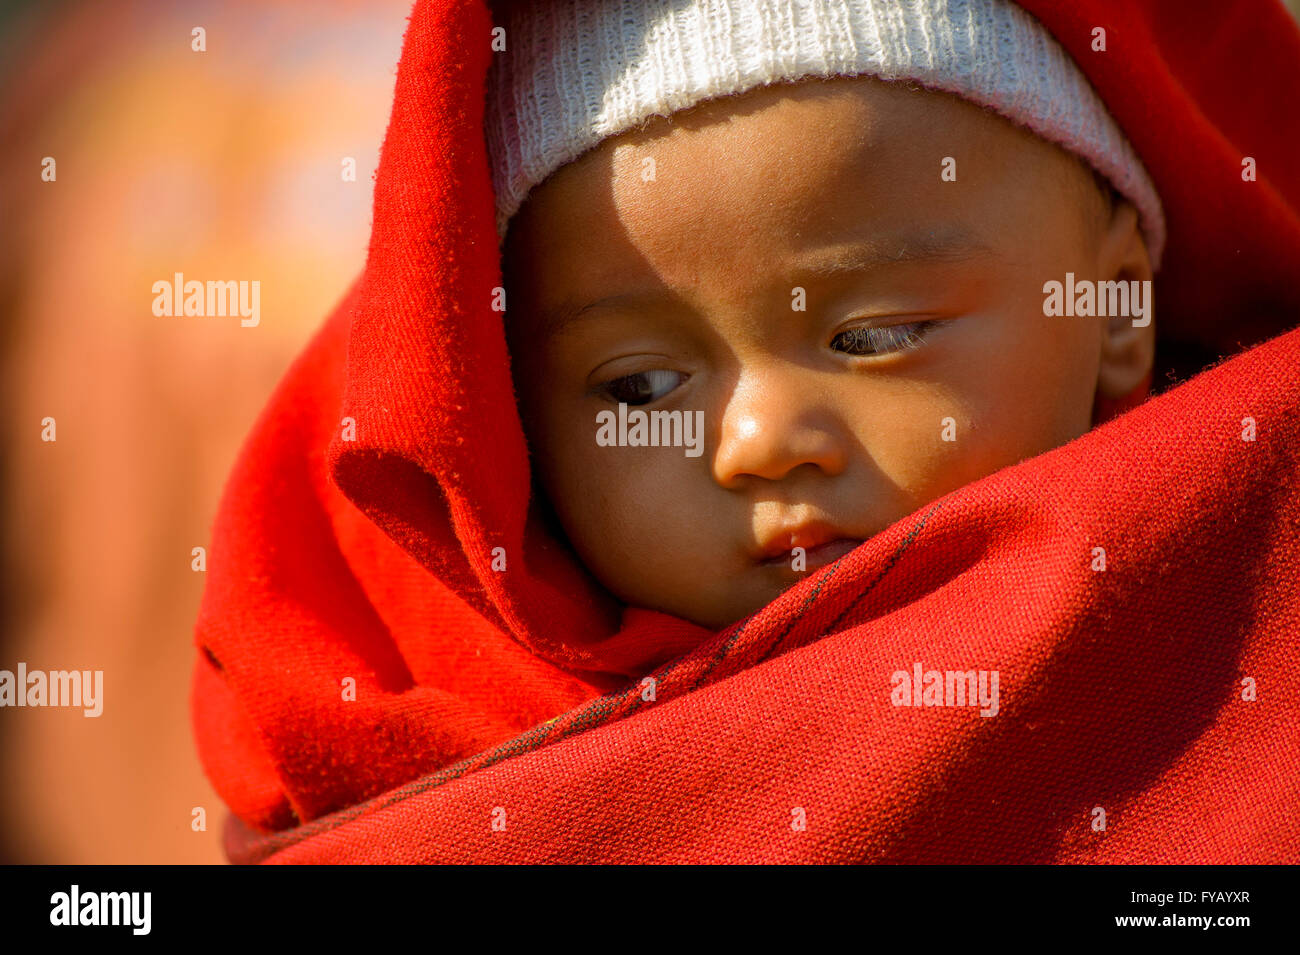 Portrait eines nepalesischen Babyjungen in einem scarlet rote Decke gehalten Stockfoto